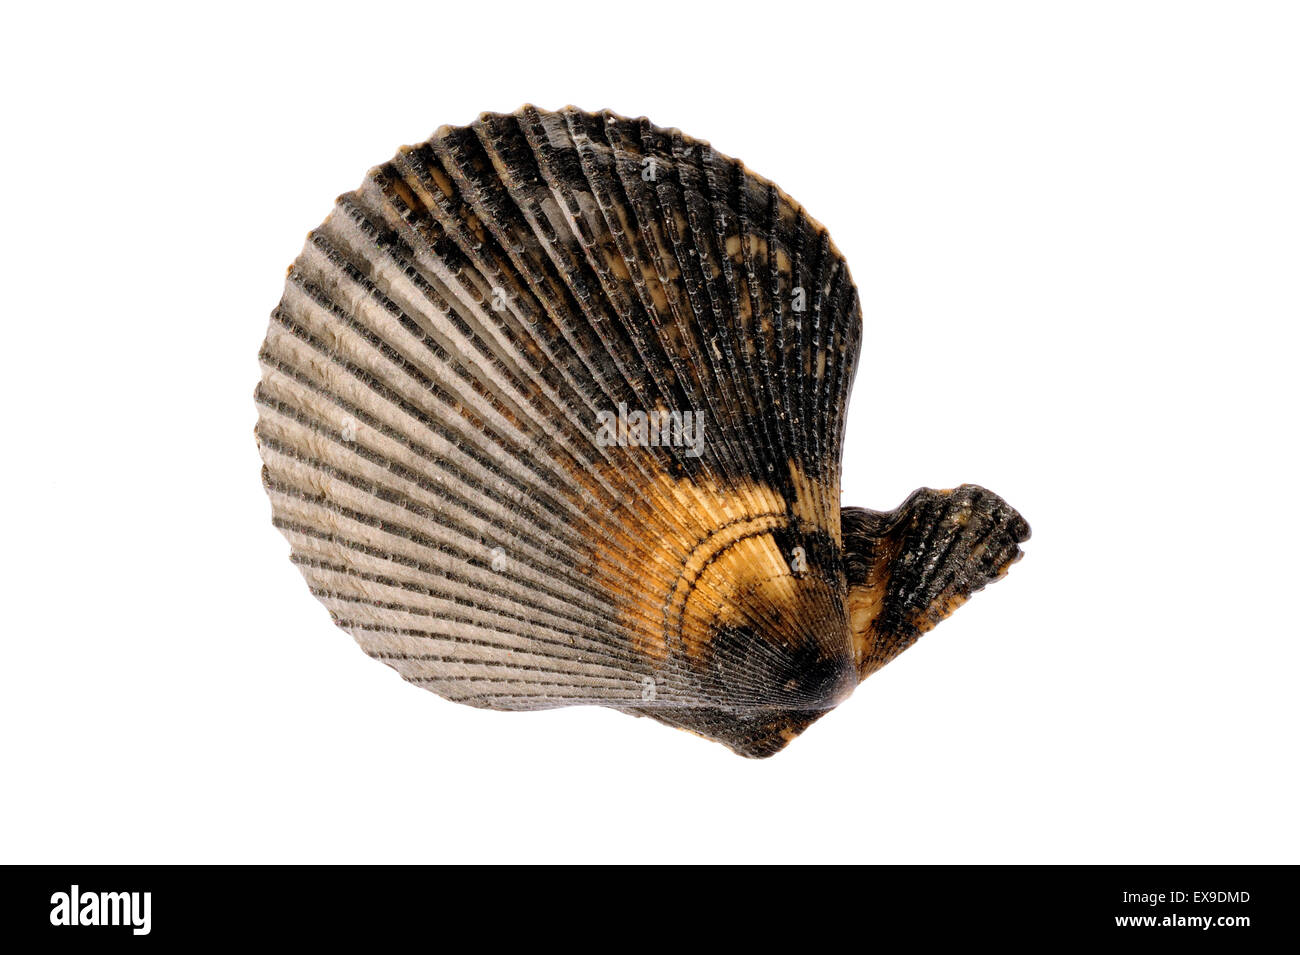 Pétoncle bigarré (Chlamys varia / Mimachlamys varia) shell sur fond blanc Banque D'Images